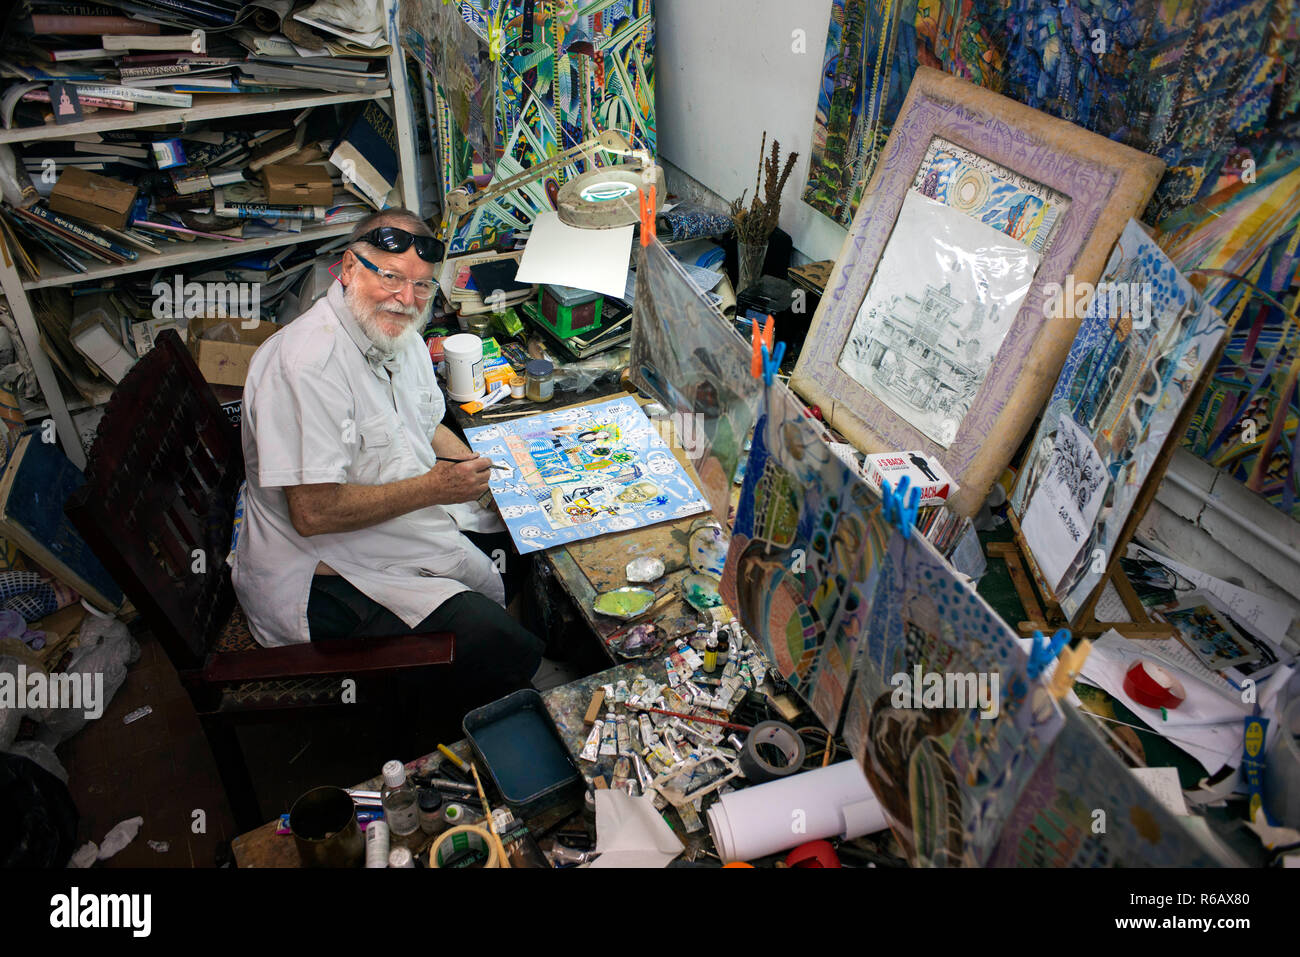 Michael Adams peintre assis dans son studio à Anse Poules bleues, l'île de Mahé, Seychelles. Baie Lazare, Anse aux poules bleues, l'artiste Michael Adams Banque D'Images